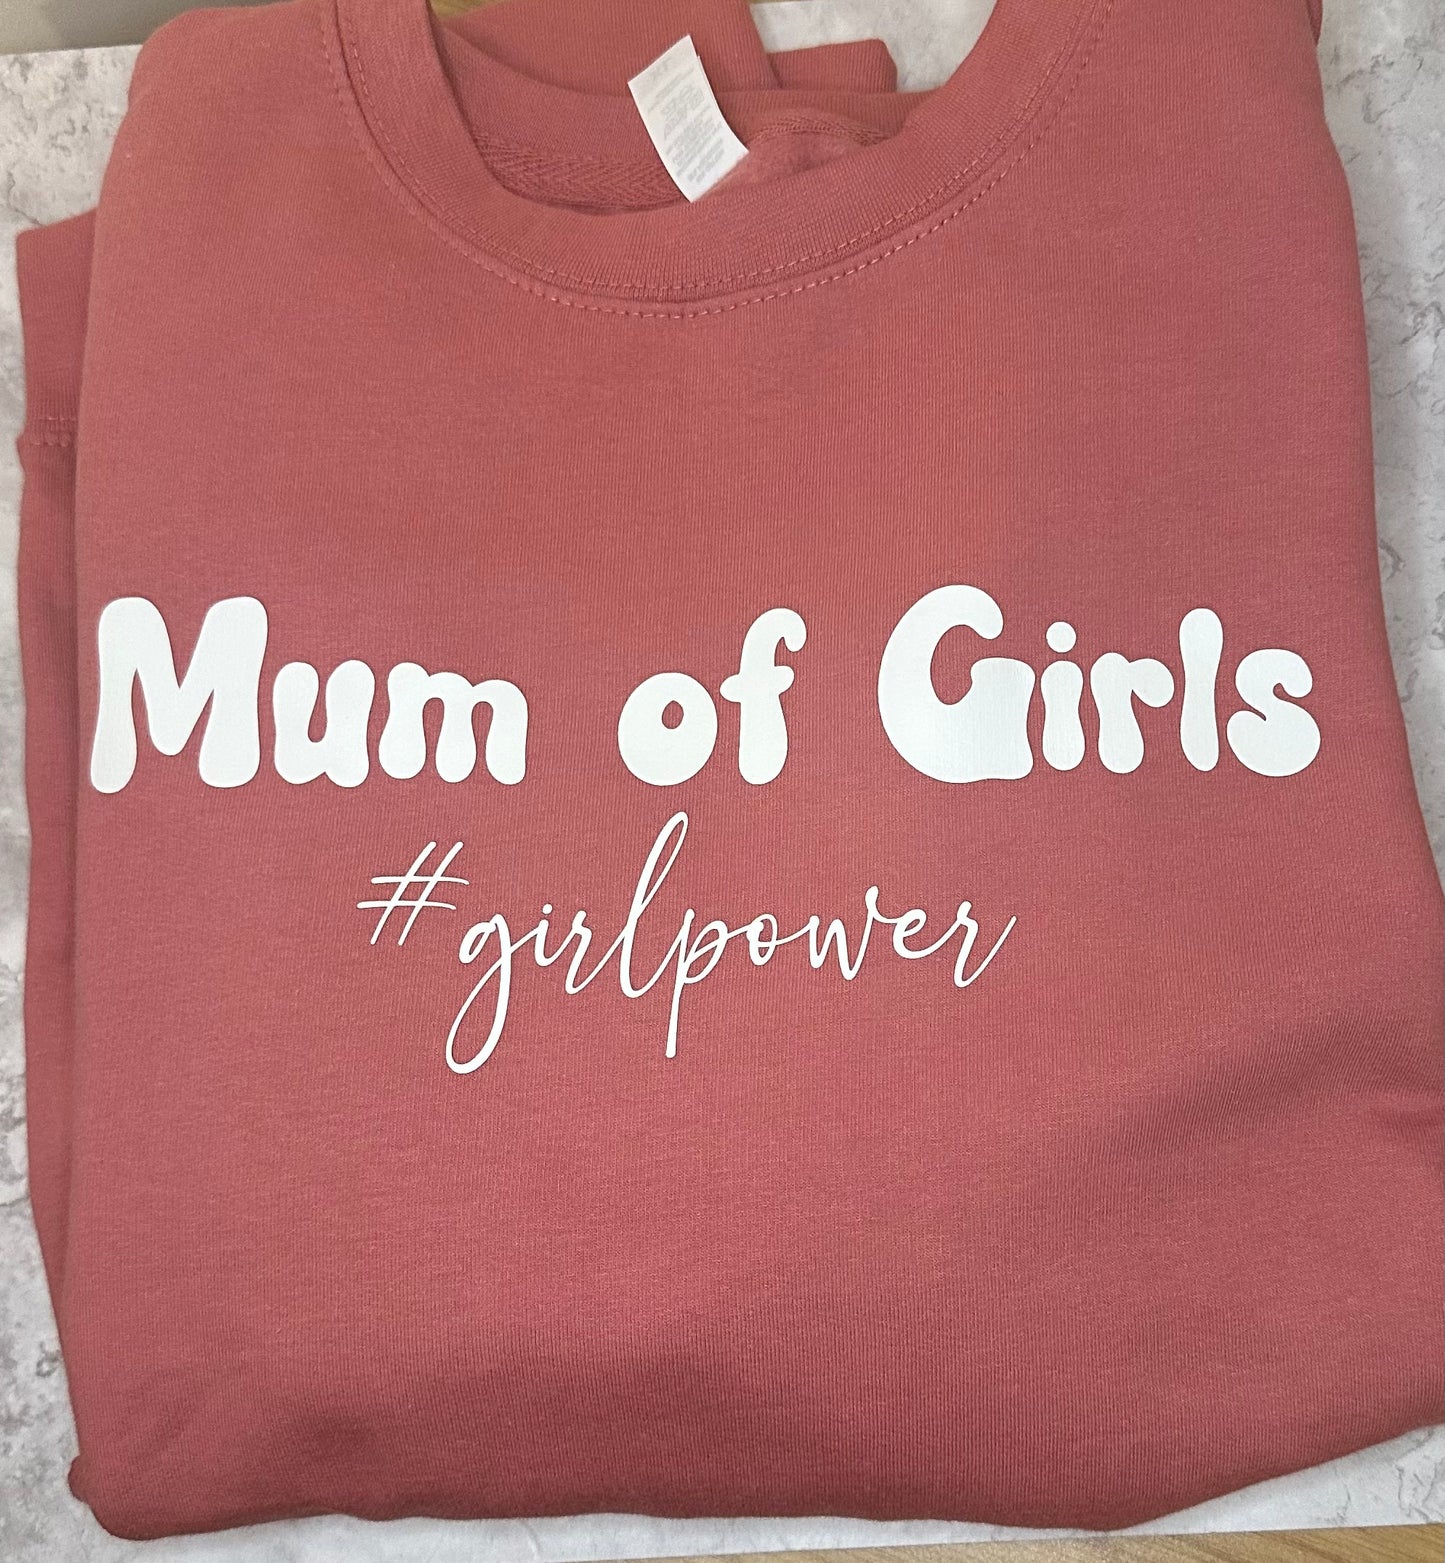 Mum of Girls girl power sweatshirt